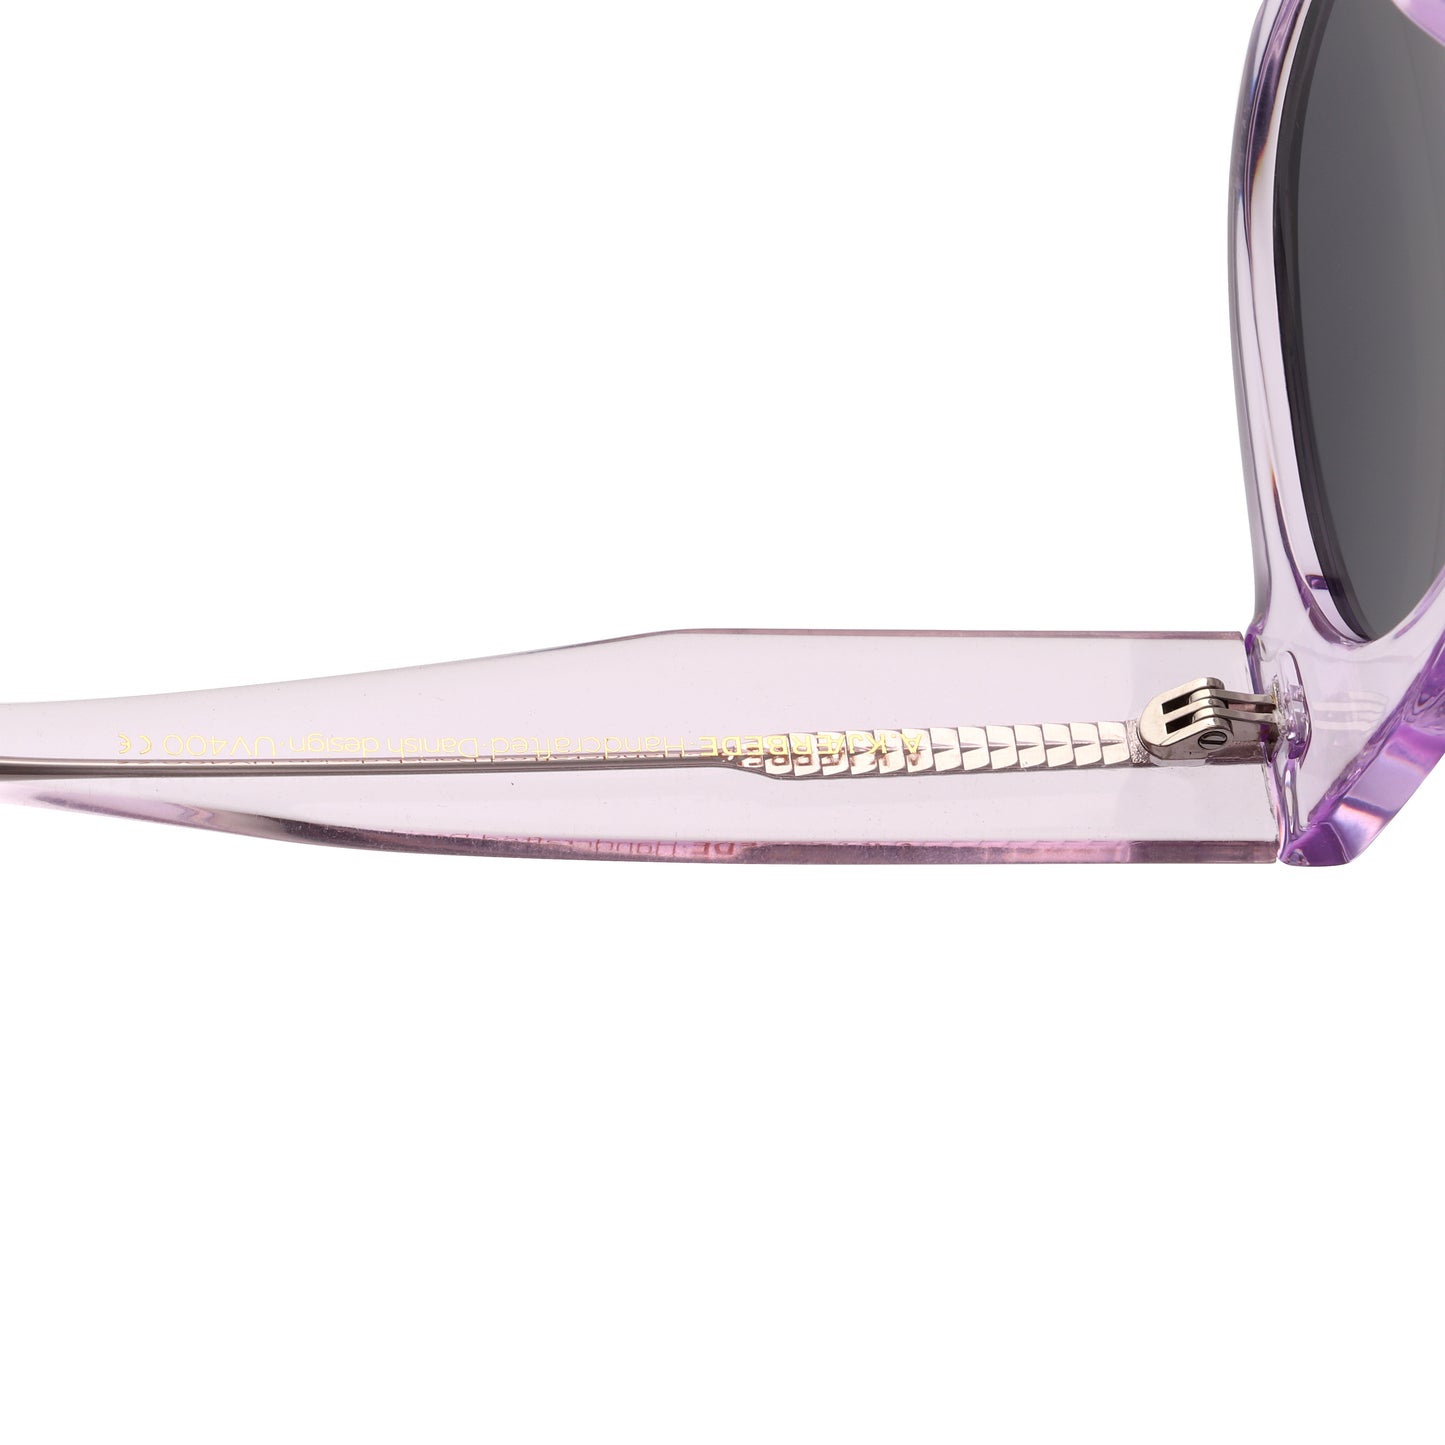 A.Kjaerbede Halo Sunglasses in Lavender Transparent color